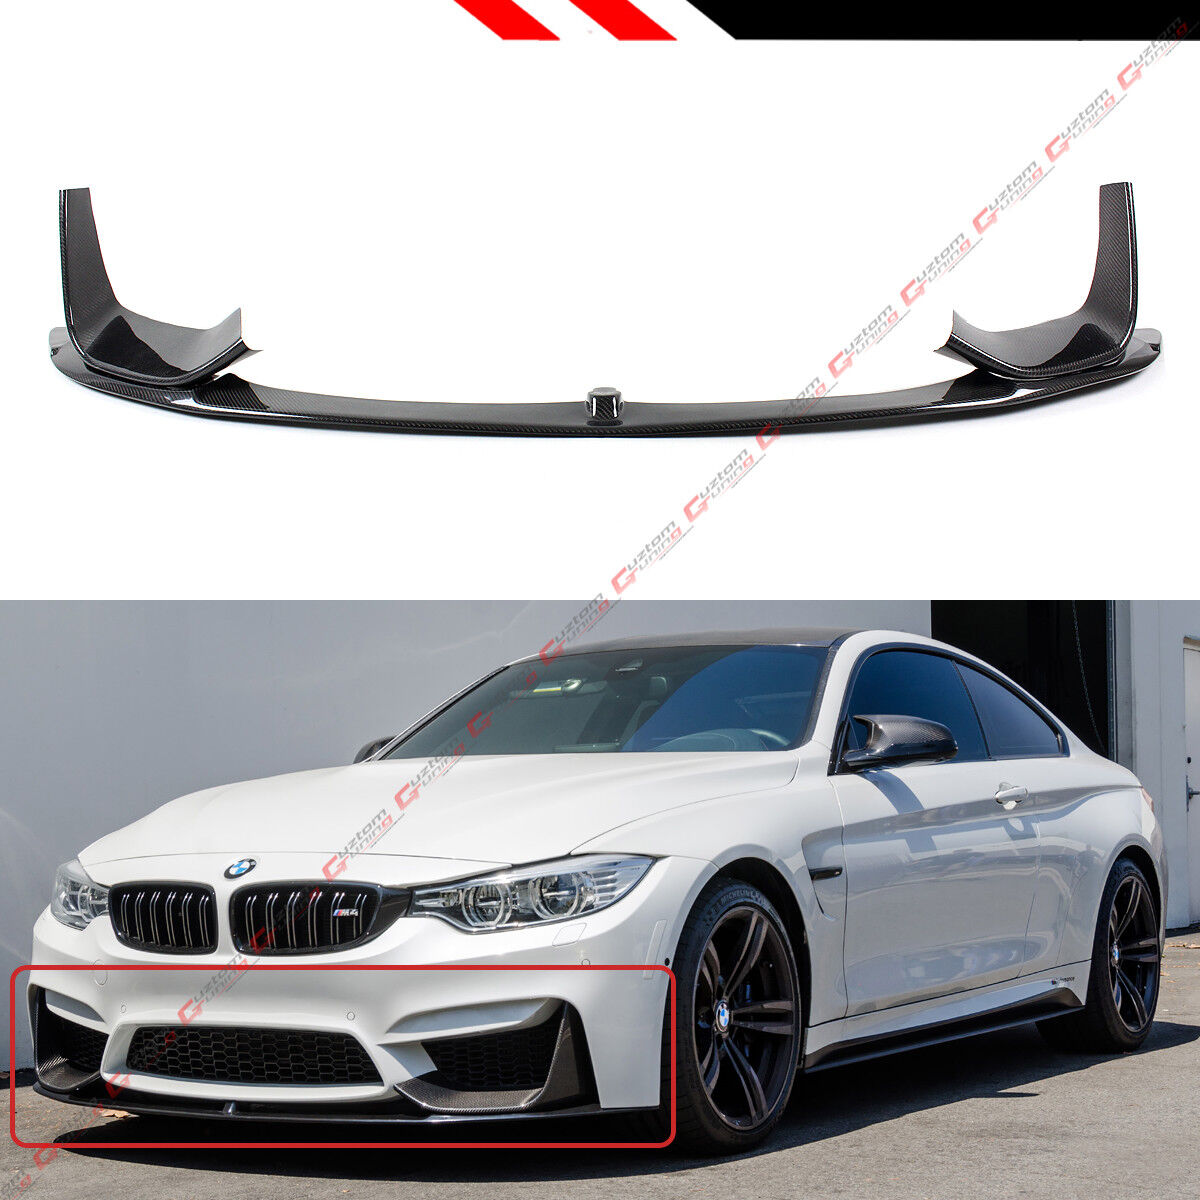 For 2015-19 BMW F80 M3 F82 M4 Carbon Fiber Front Bumper Lip + 2 Pc Splitters Set